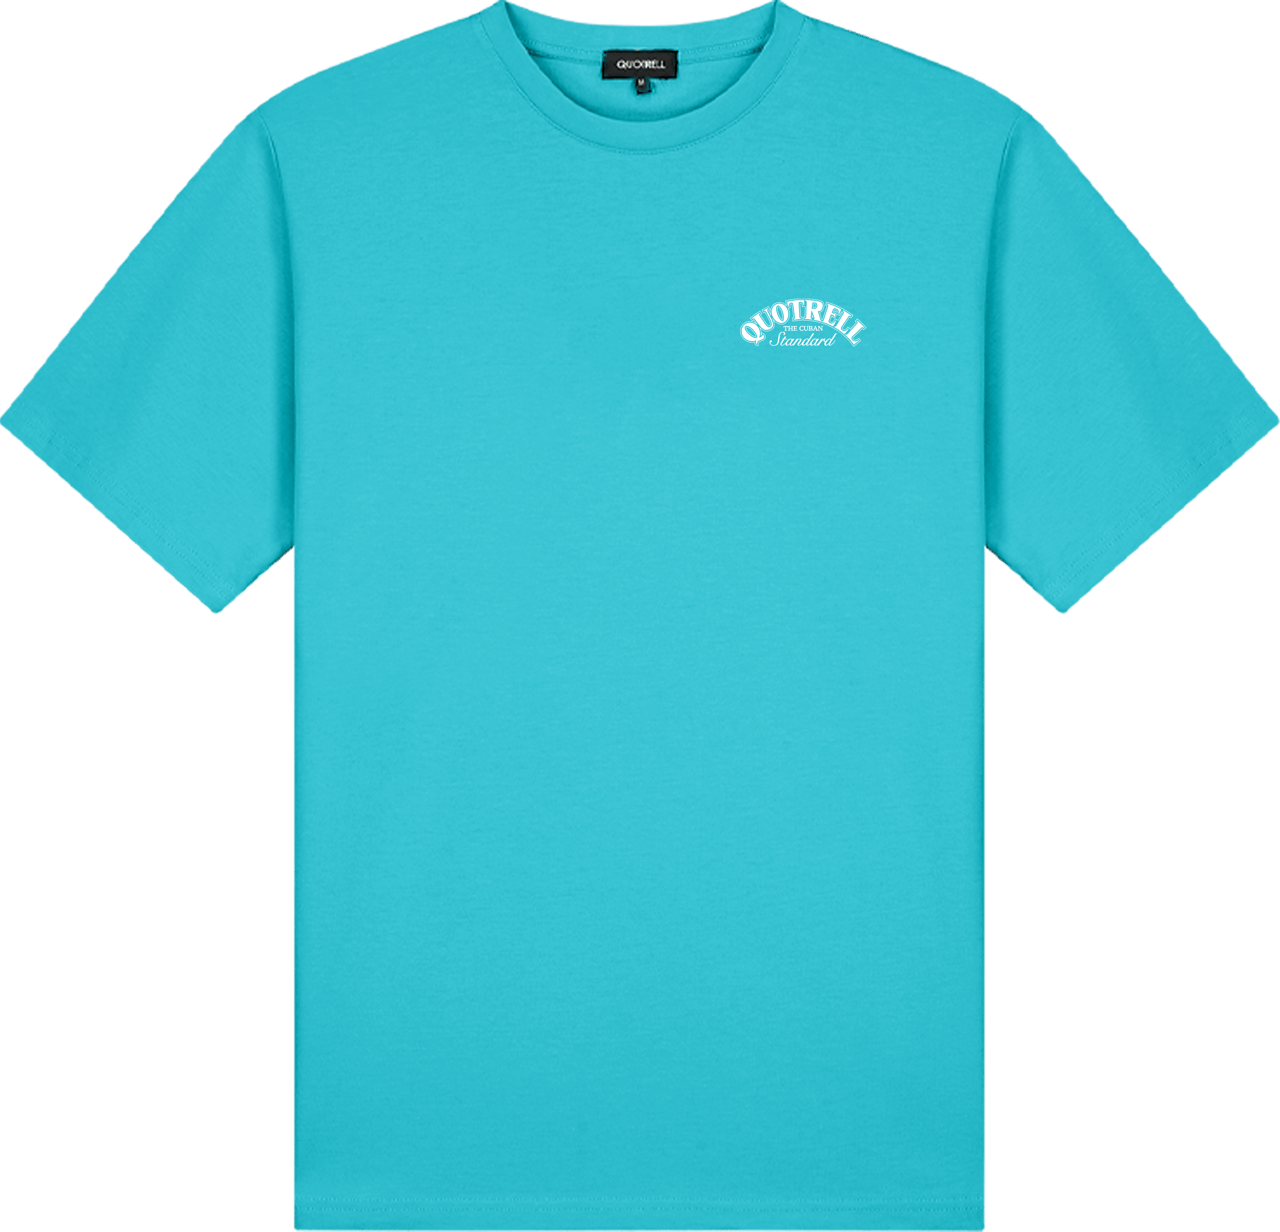 Quotrell Avenida T-shirt | Aqua/white Blauw